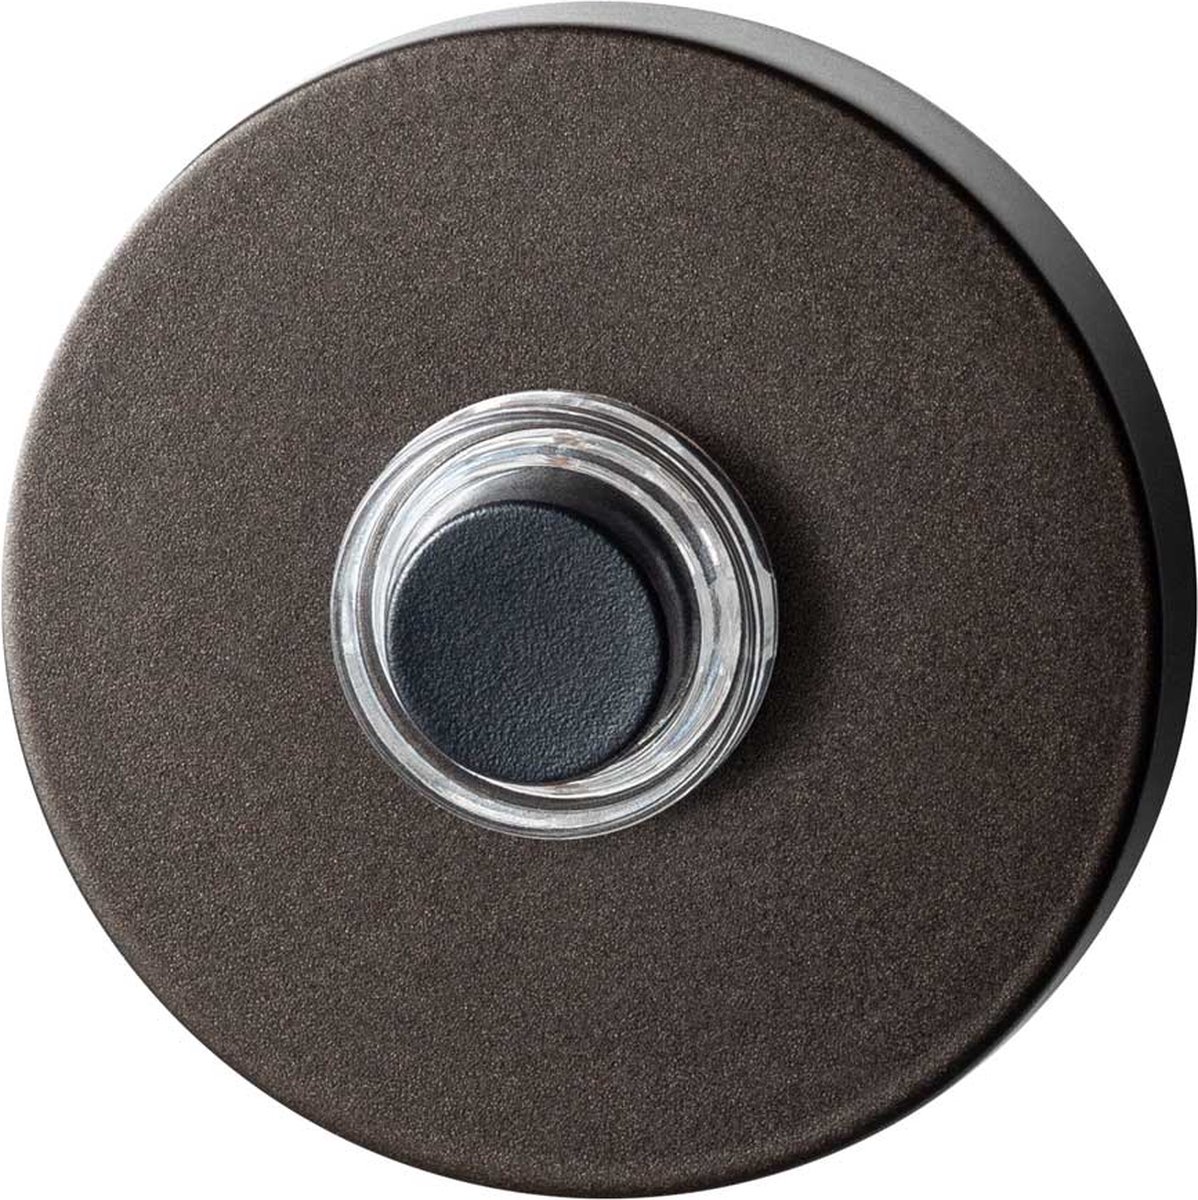 GPF9826.A1.1100 deurbel met zwarte button rond 50x8 mm Dark blend